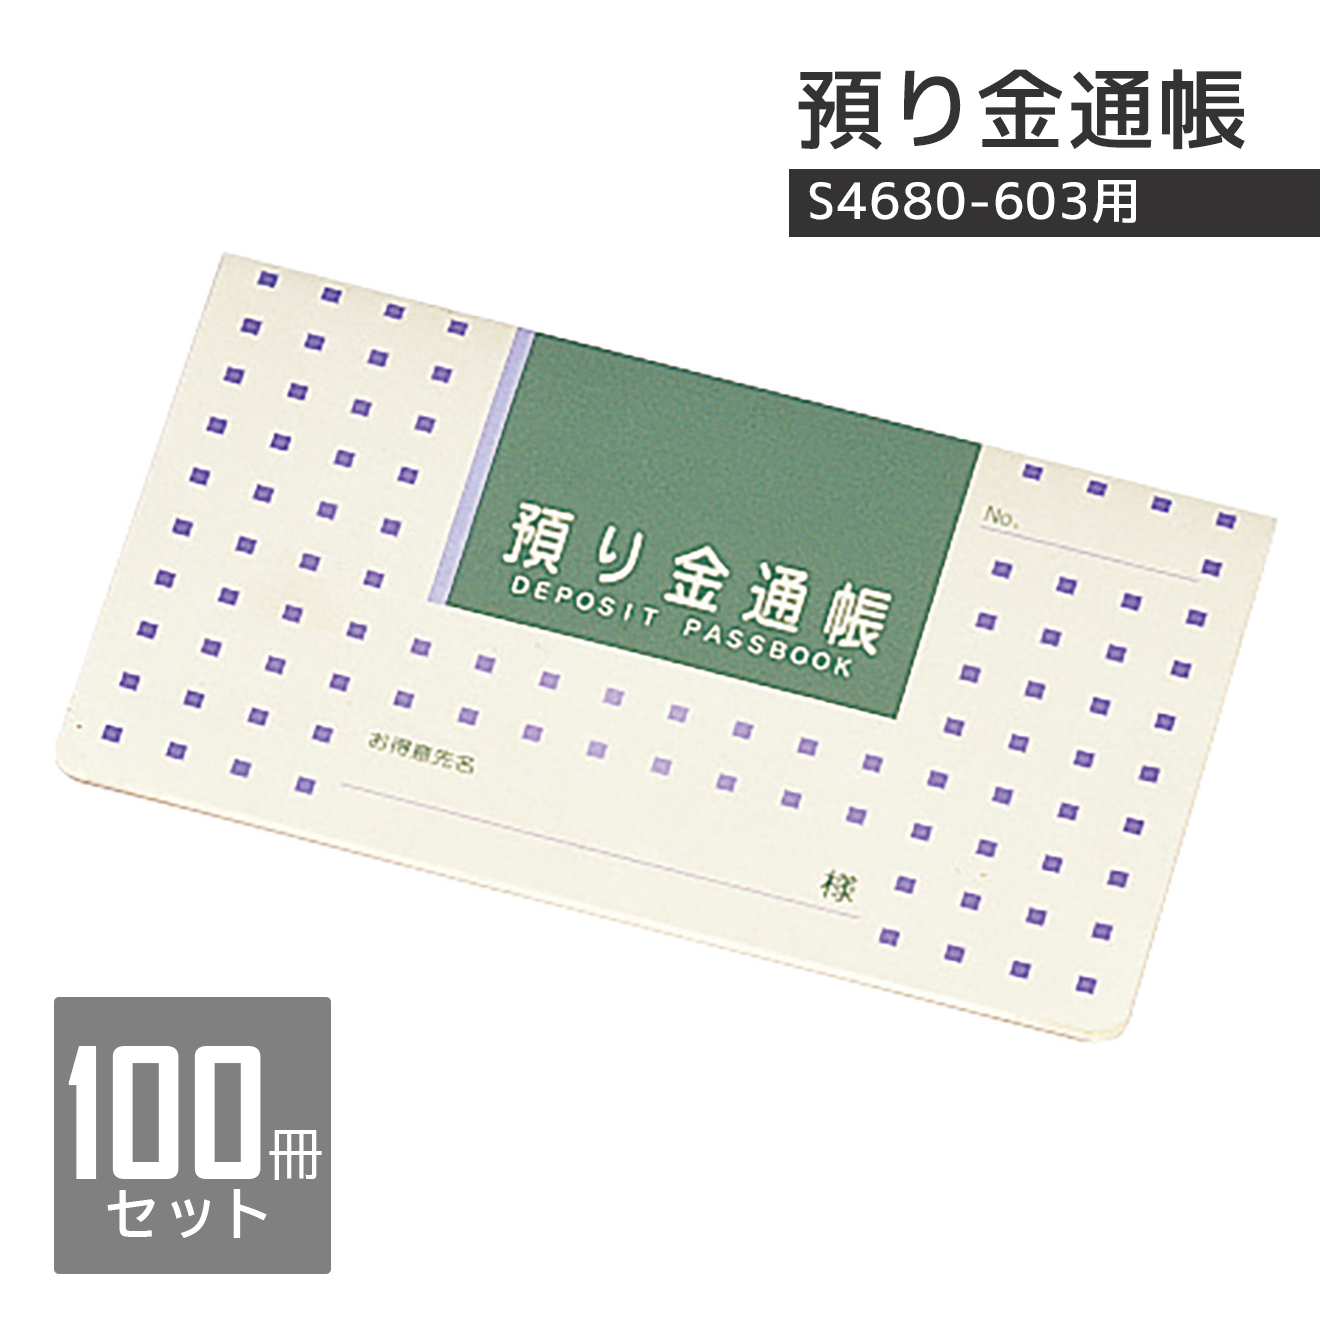 S4680-603用入金通帳　100冊